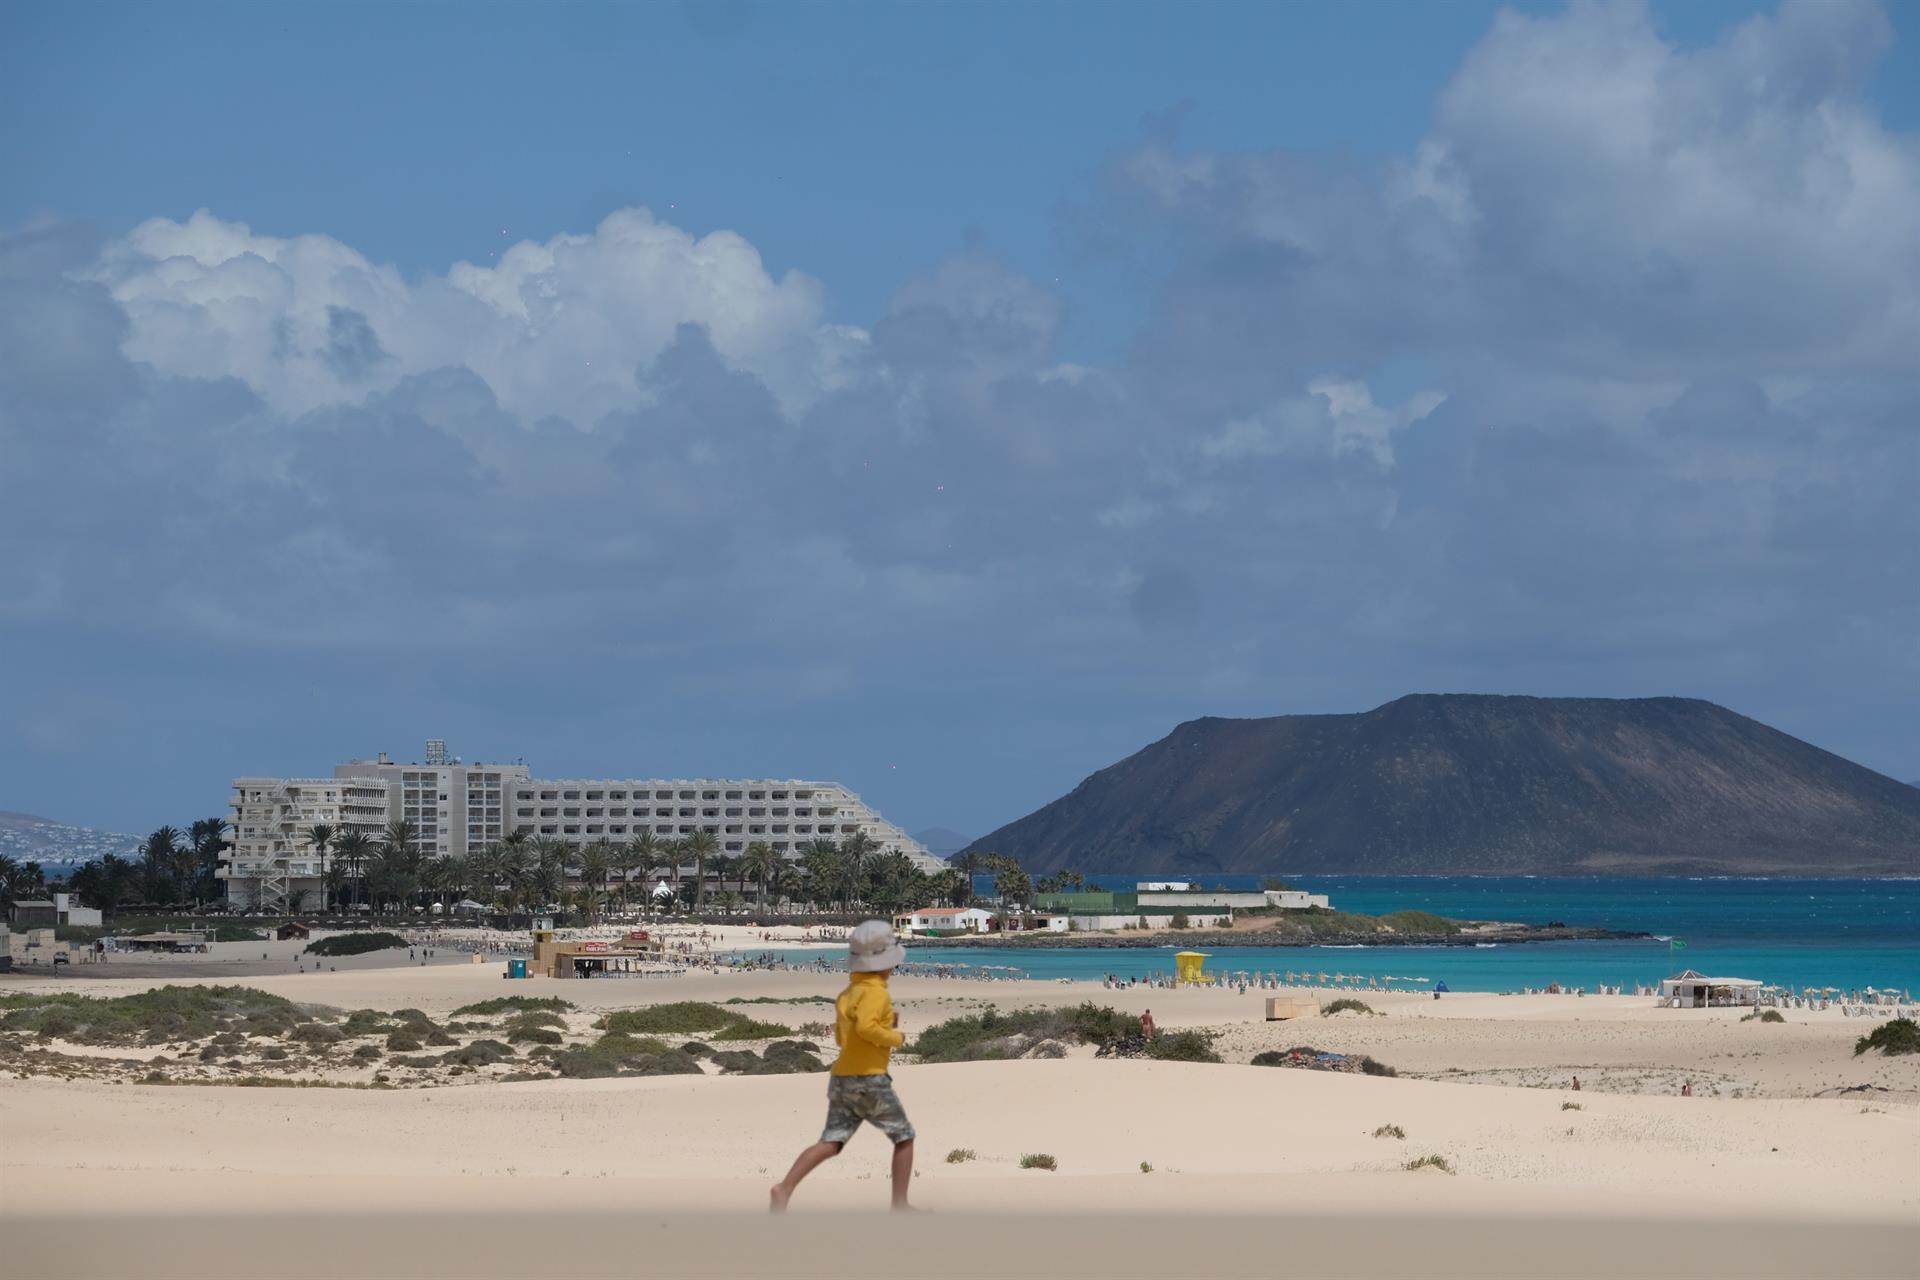 Imagen de archivo de uno de los hoteles del grupo Riu situados dentro de las Dunas de Corralejo, en Fuerteventura. EFE/Carlos de Saá